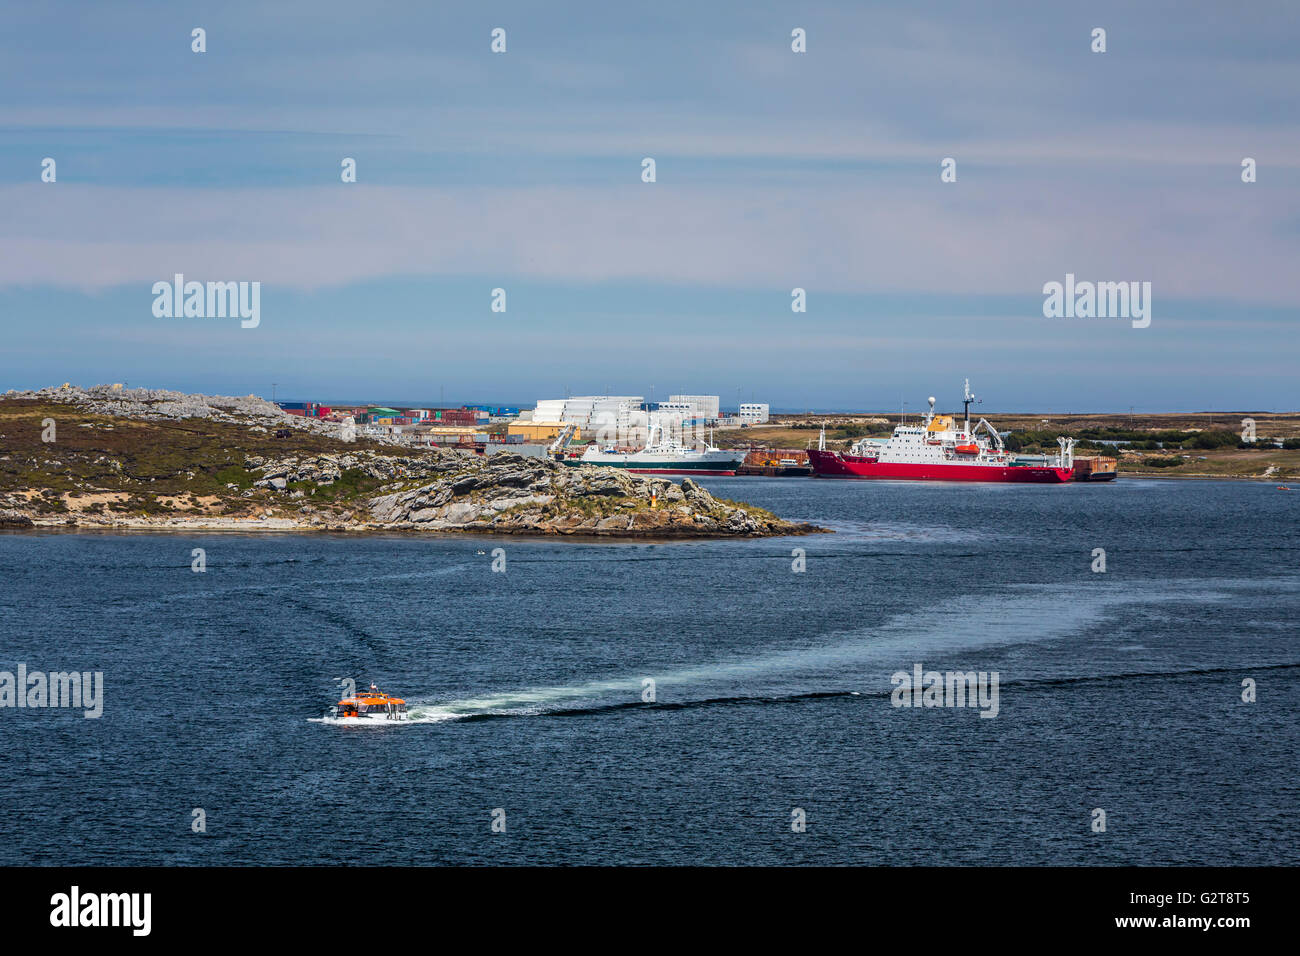 La nave di crociera Zaandam offerta barca trasporto passeggeri a Port Stanley nelle isole Falkland, British territorio d oltremare. Foto Stock